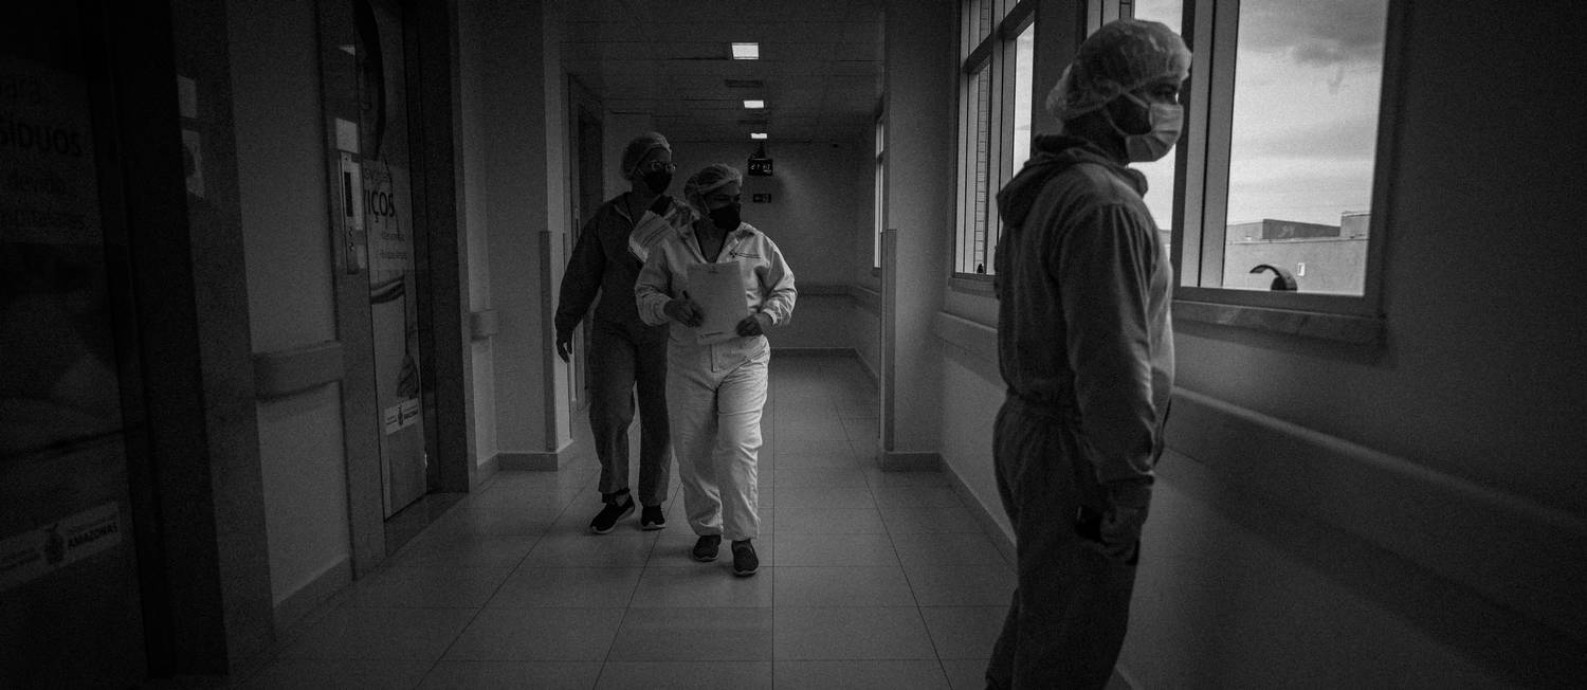 Profissionais da área de saúde com equipamentos de proteção contra a Covid-19 atendem no Hospital Delphina Aziz, na Zona Norte de Manaus. Foto: Raphael Alves / Agência O Globo